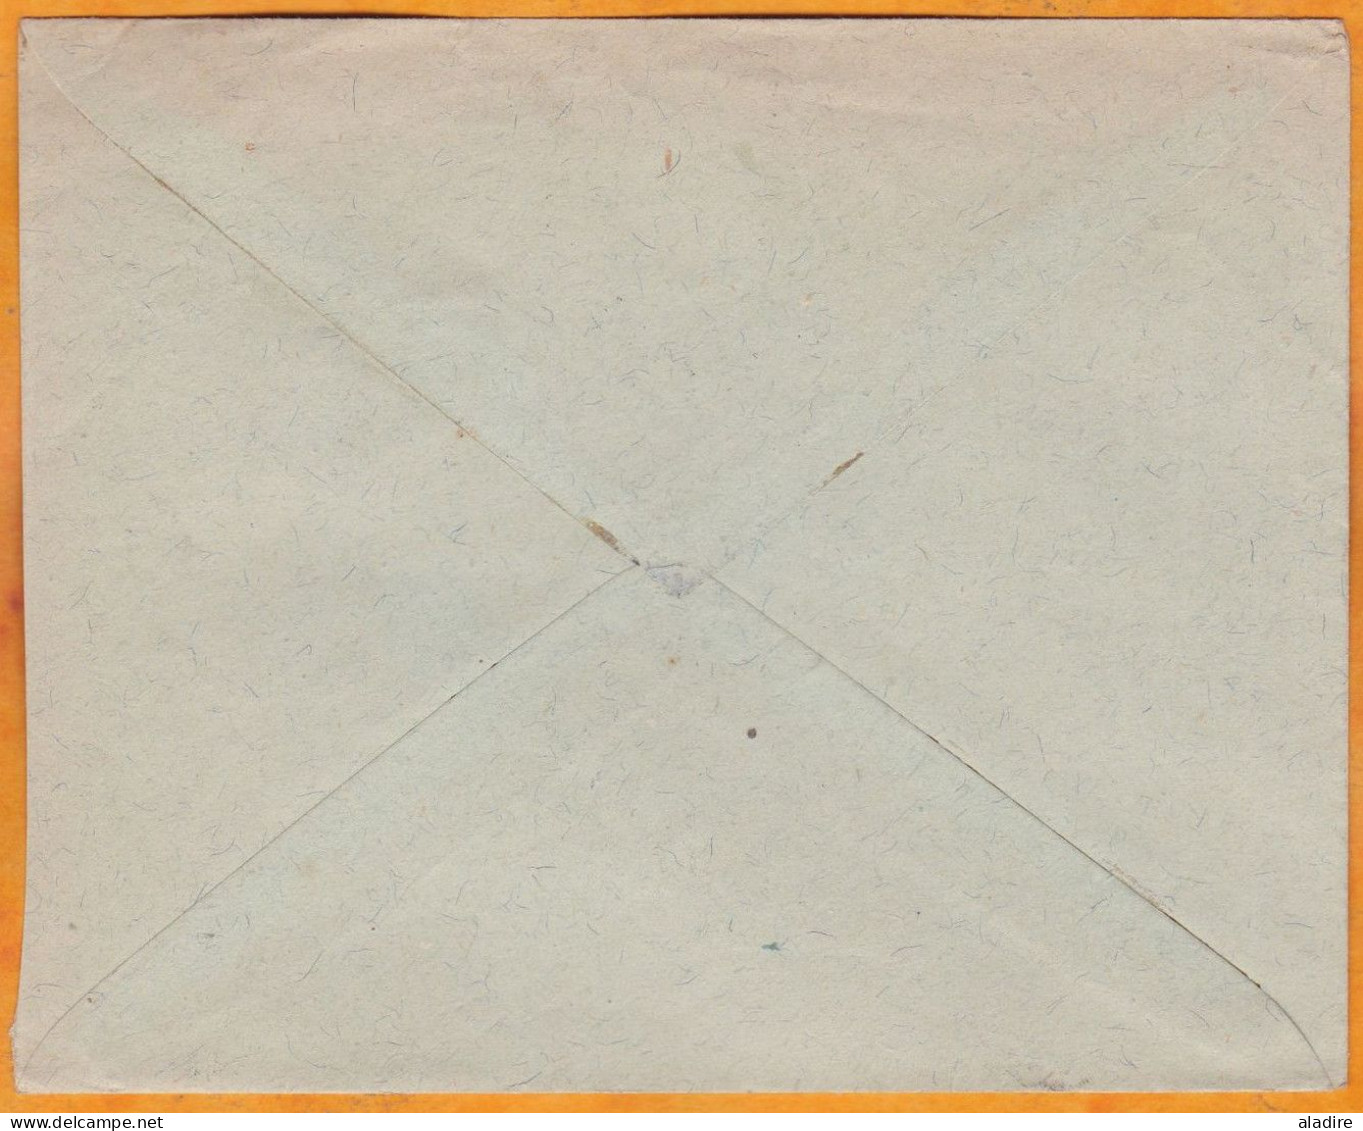 1920 - Enveloppe De FIUME Vers WIEN, Vienne, Austria, Autriche - Affrt Paire 60 + 5 Cent Surch Valore Globale - Fiume